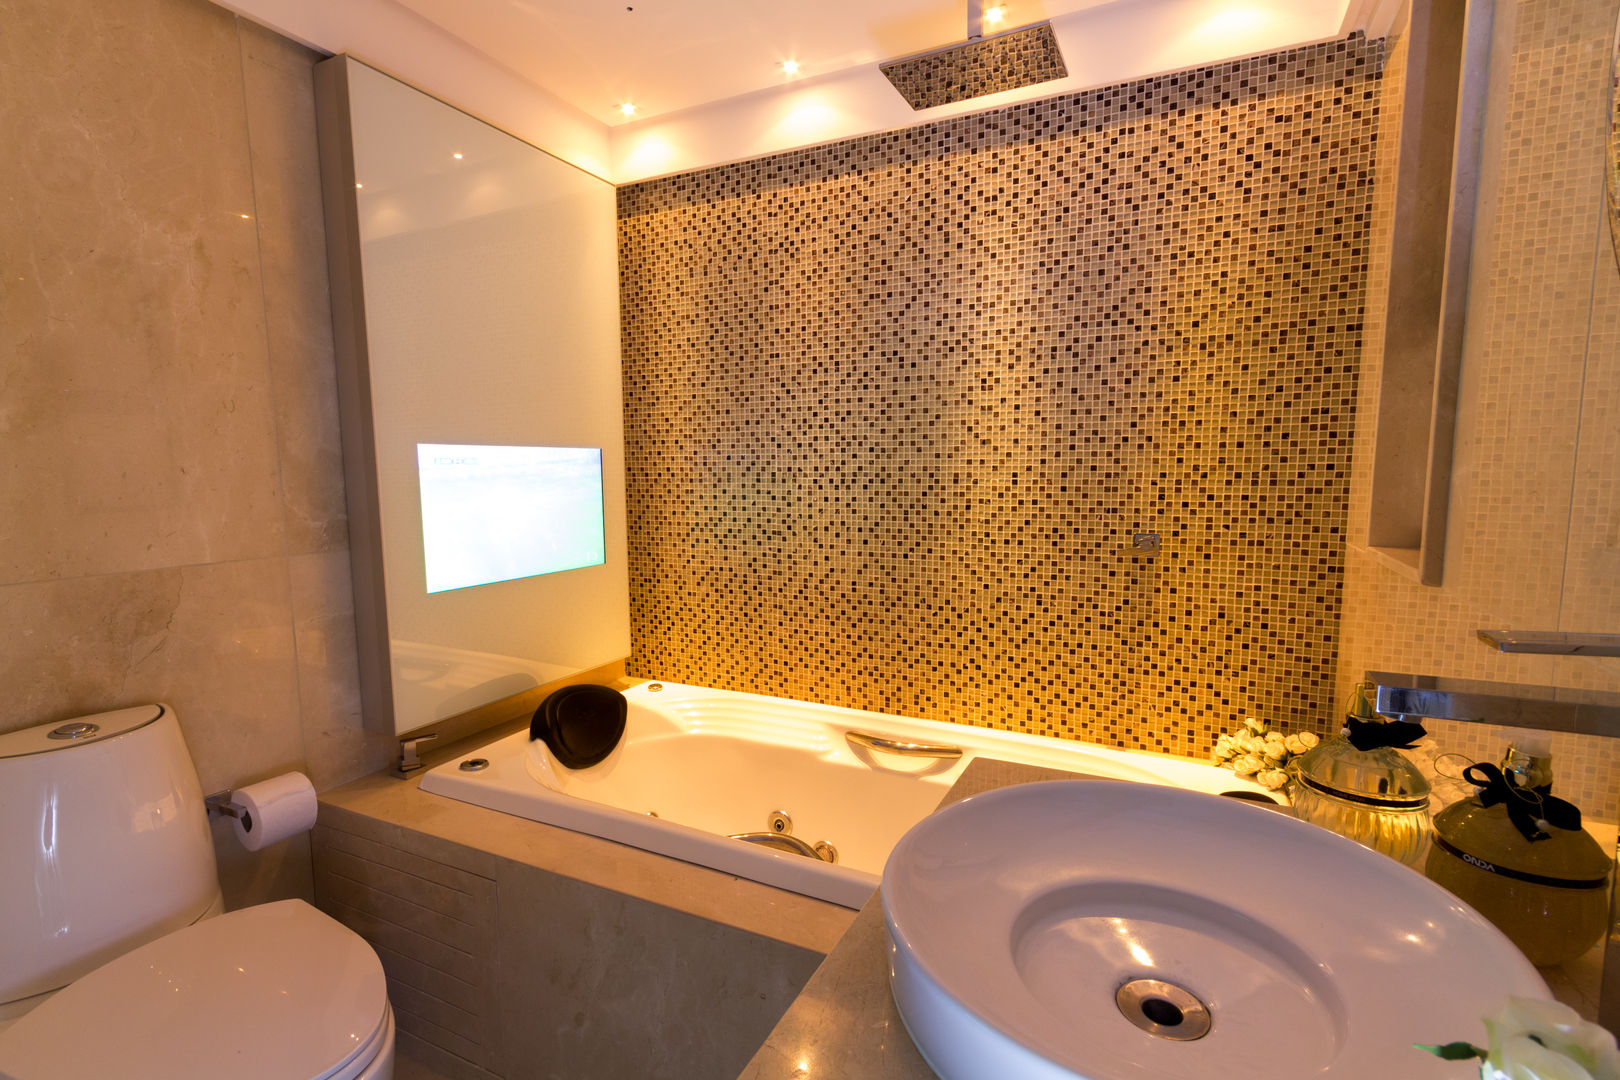 Banheiro Social Pedrosa Casa Viva Arquitetura Banheiros modernos cuba apoio,painel movie,cinex,banheira moderna